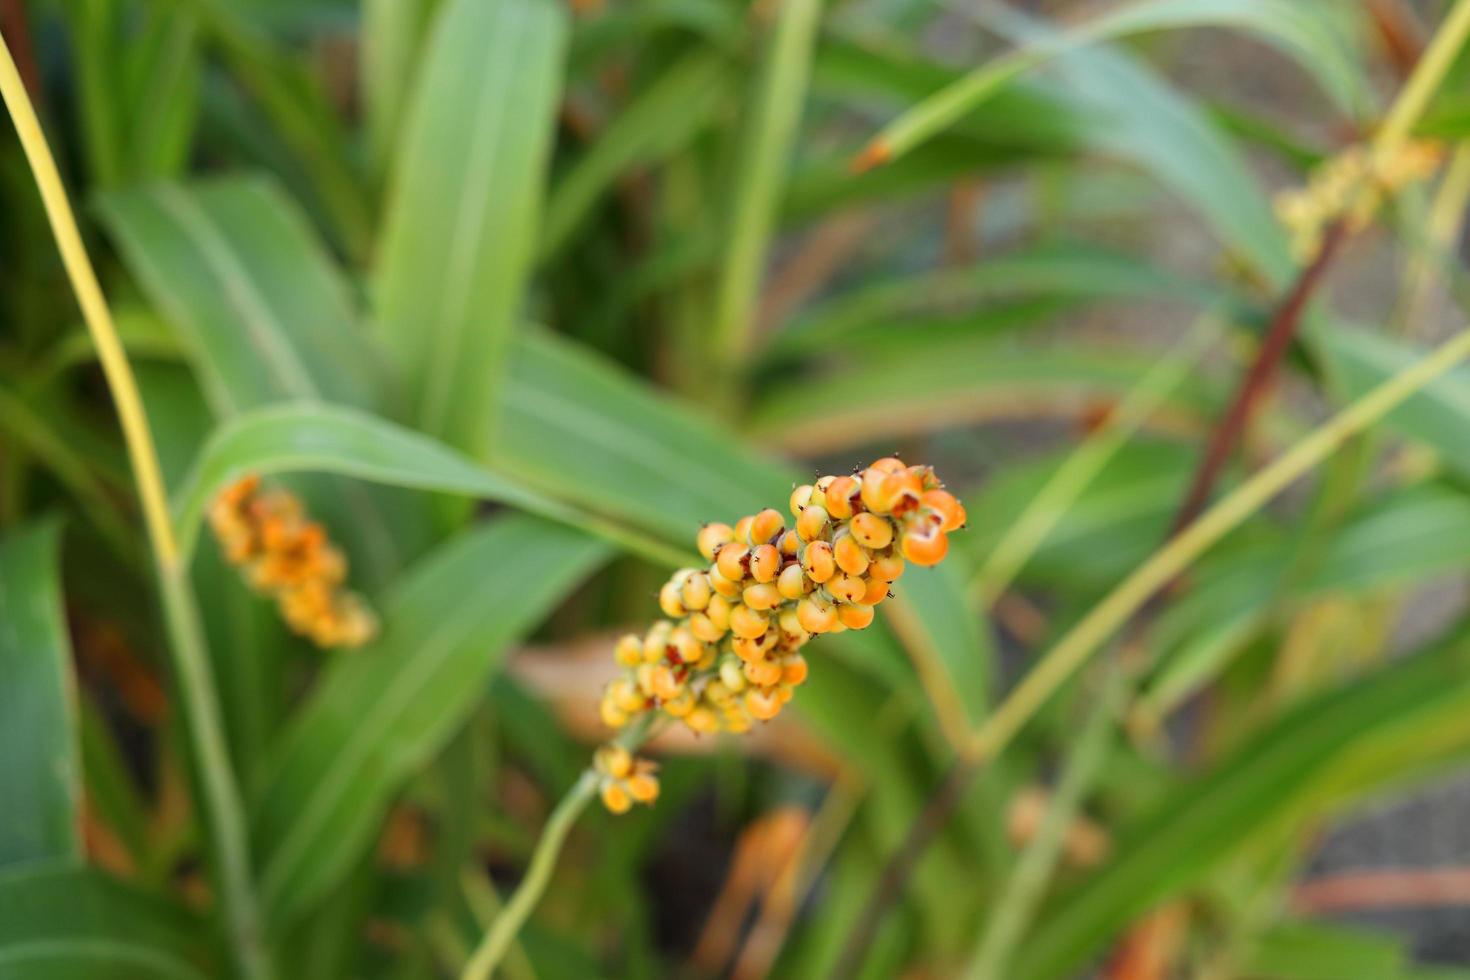 semilla madura de color naranja claro de mijo o sorgo en rama y fondo de hojas verdes borrosas, tailandia. foto